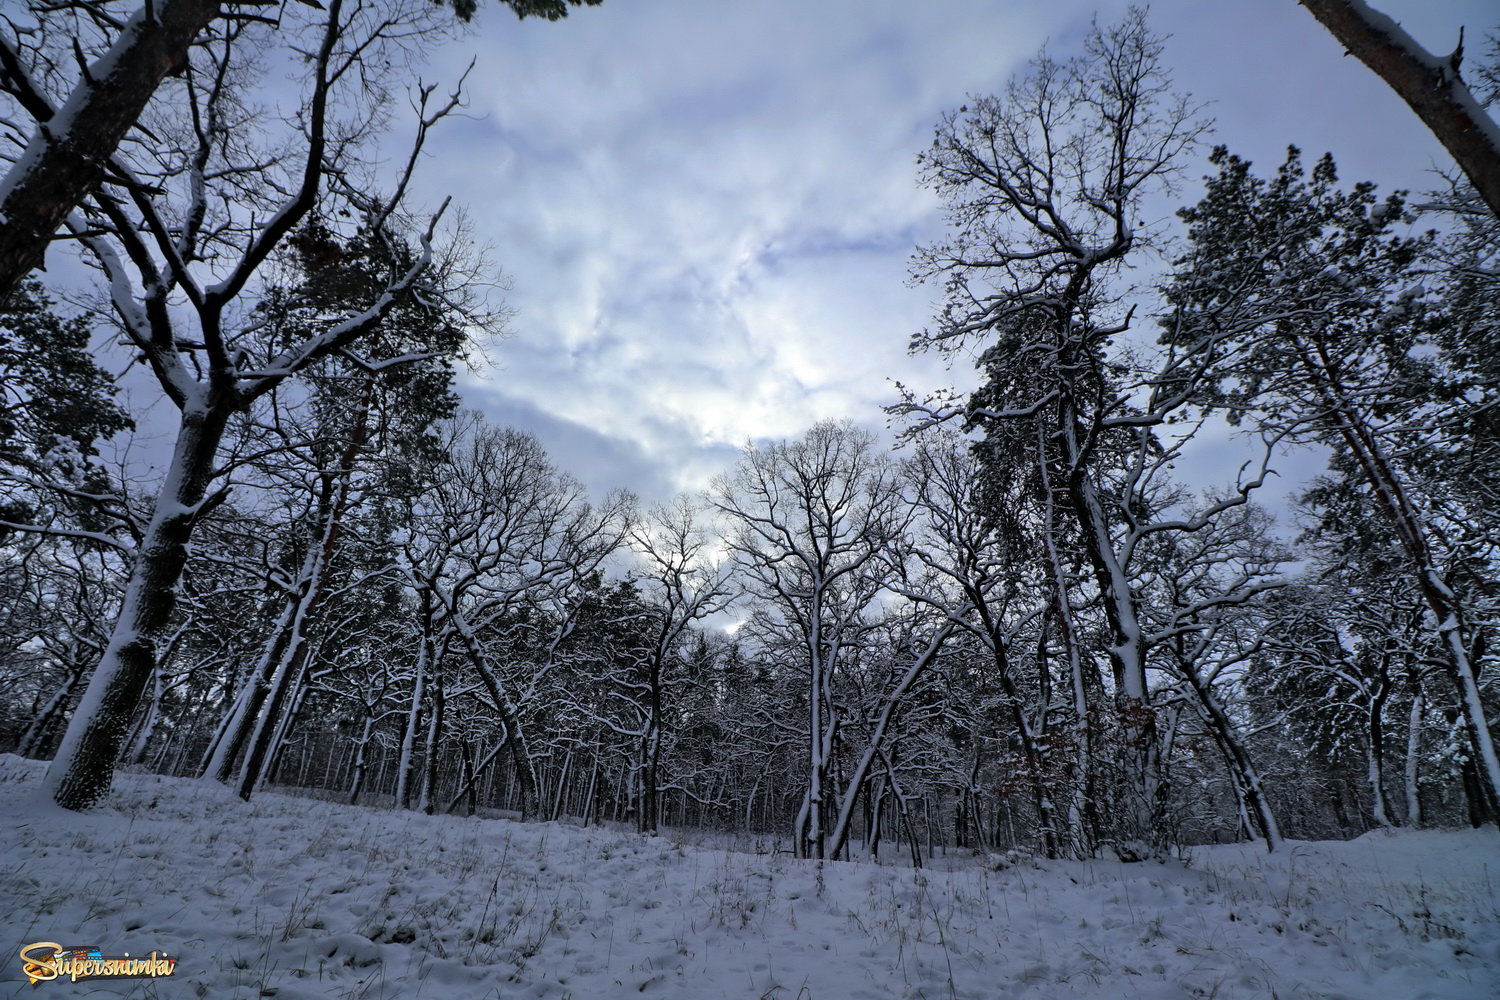  Зима в лесу.